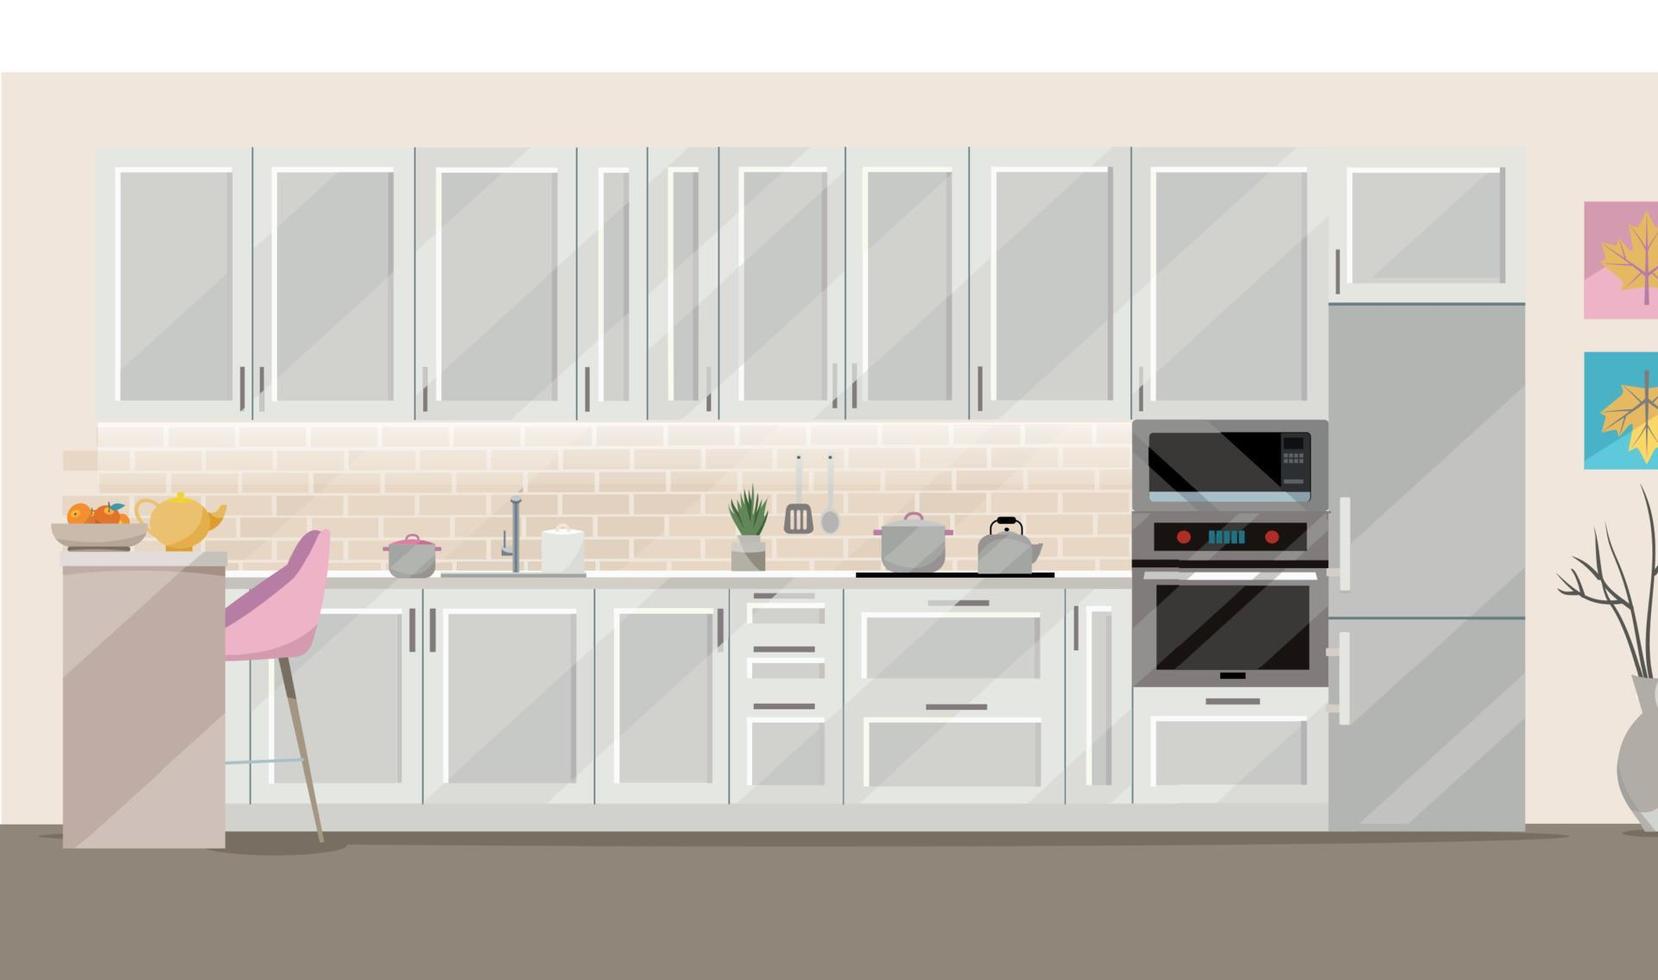 flache illustration weiße küche auf beigem hintergrund mit küchenzubehör - kühlschrank, ofen, mikrowelle. Esstisch mit 4 Stühlen am Fenster mit transparenten Vorhängen, Tee, Teekanne. vektor